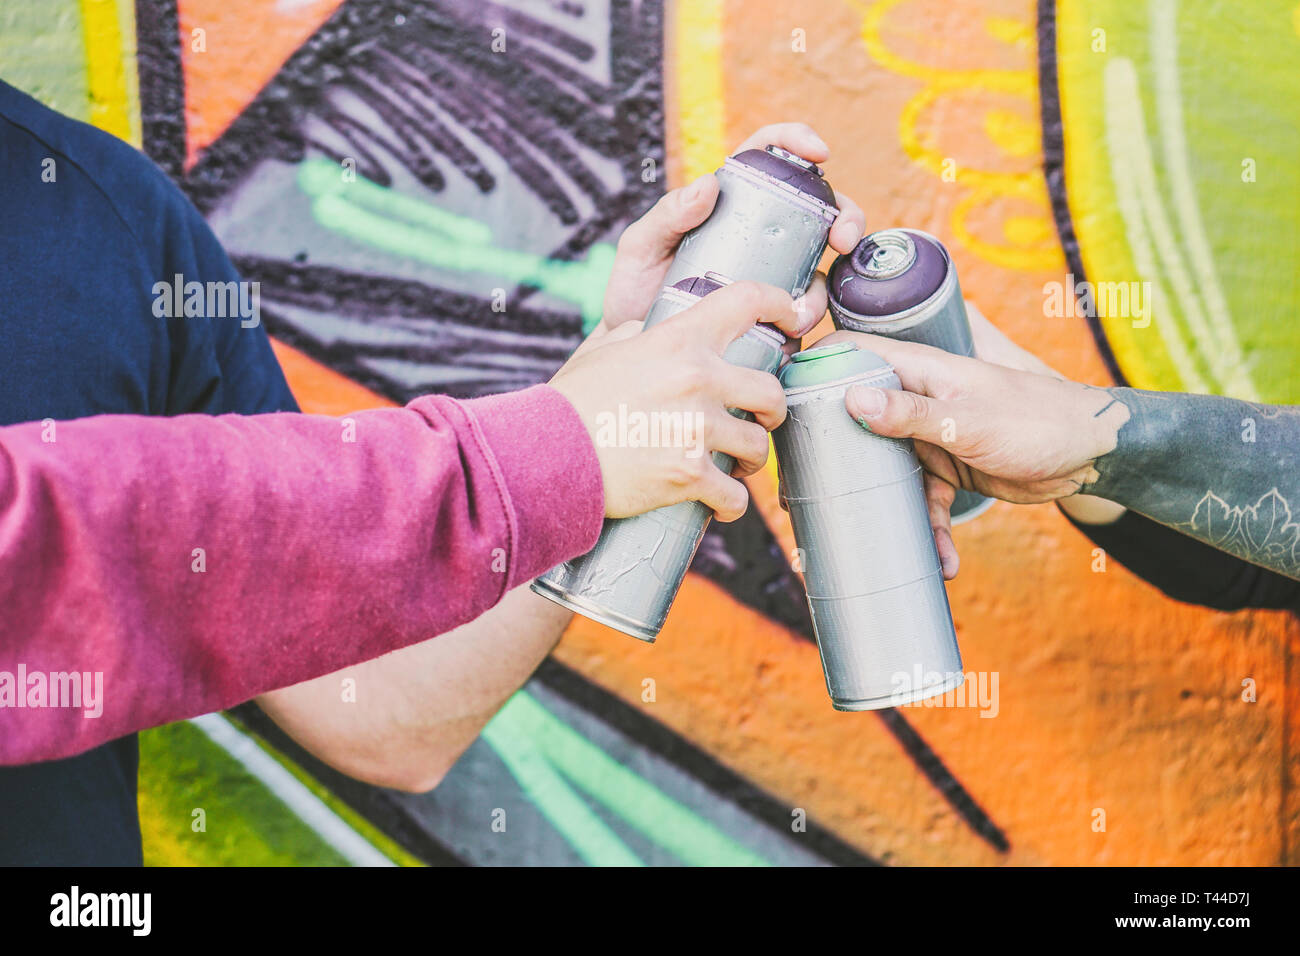 Chiudere fino a mani di persone che trattengono il colore bombolette spray contro il muro di graffiti - artisti di graffiti sul lavoro - i ribelli, lifestyle, arte di strada Nozione Foto Stock